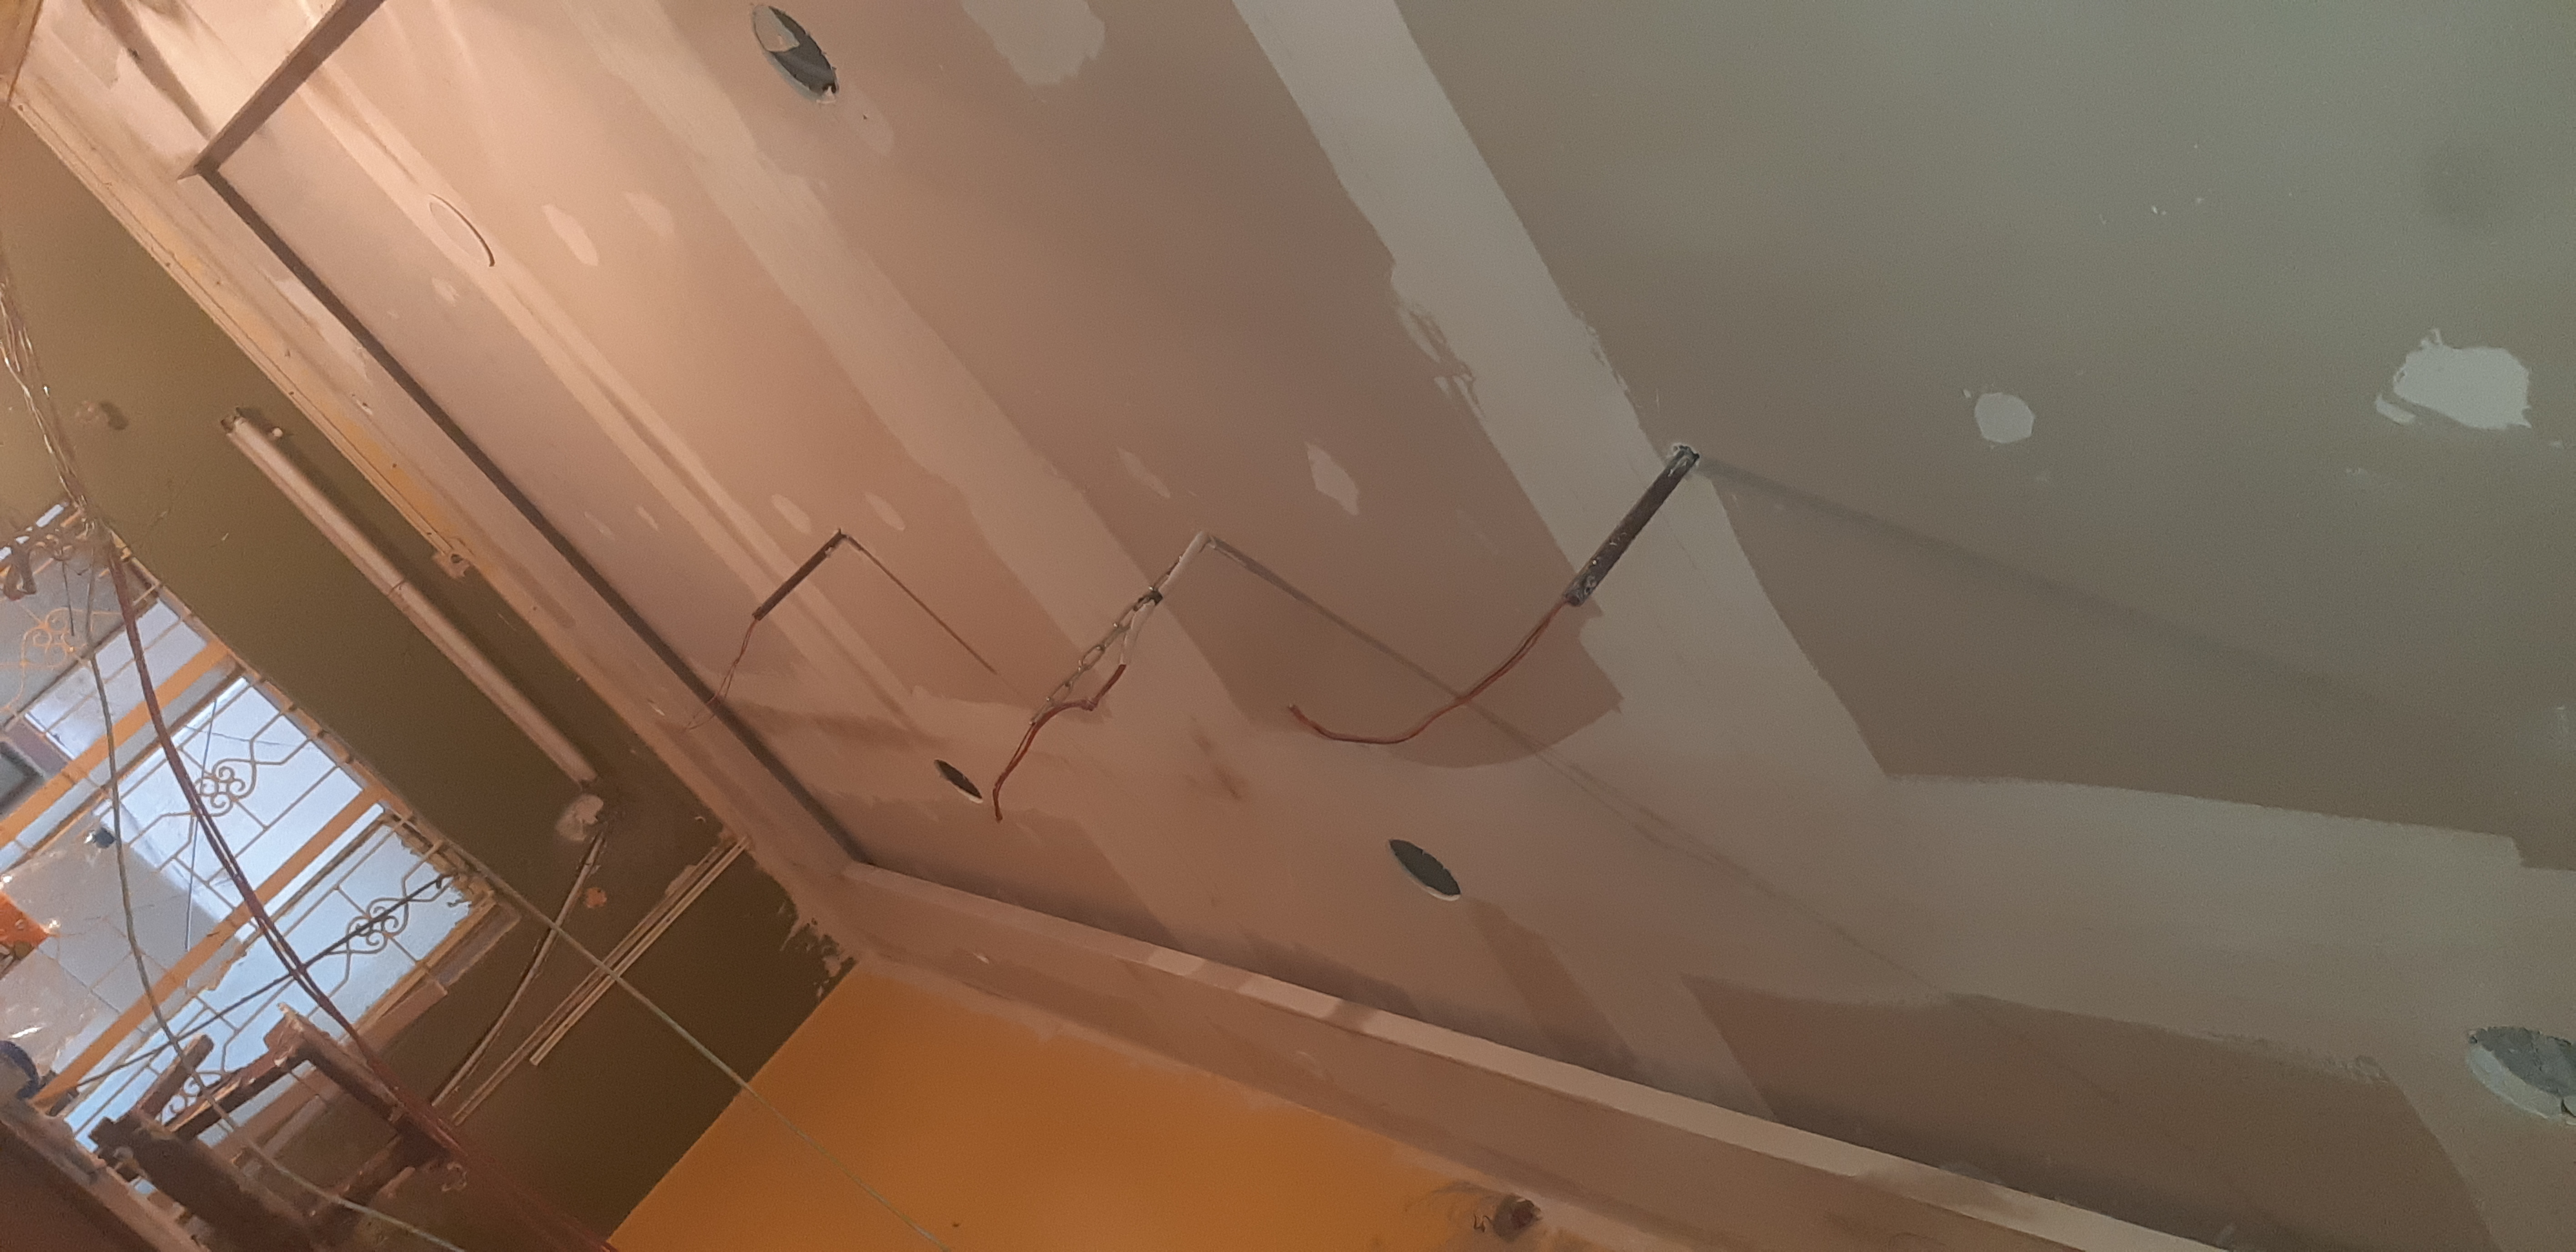 Drywall gypsum board false ceiling design, false ceiling, for livingroom ceiling design, 